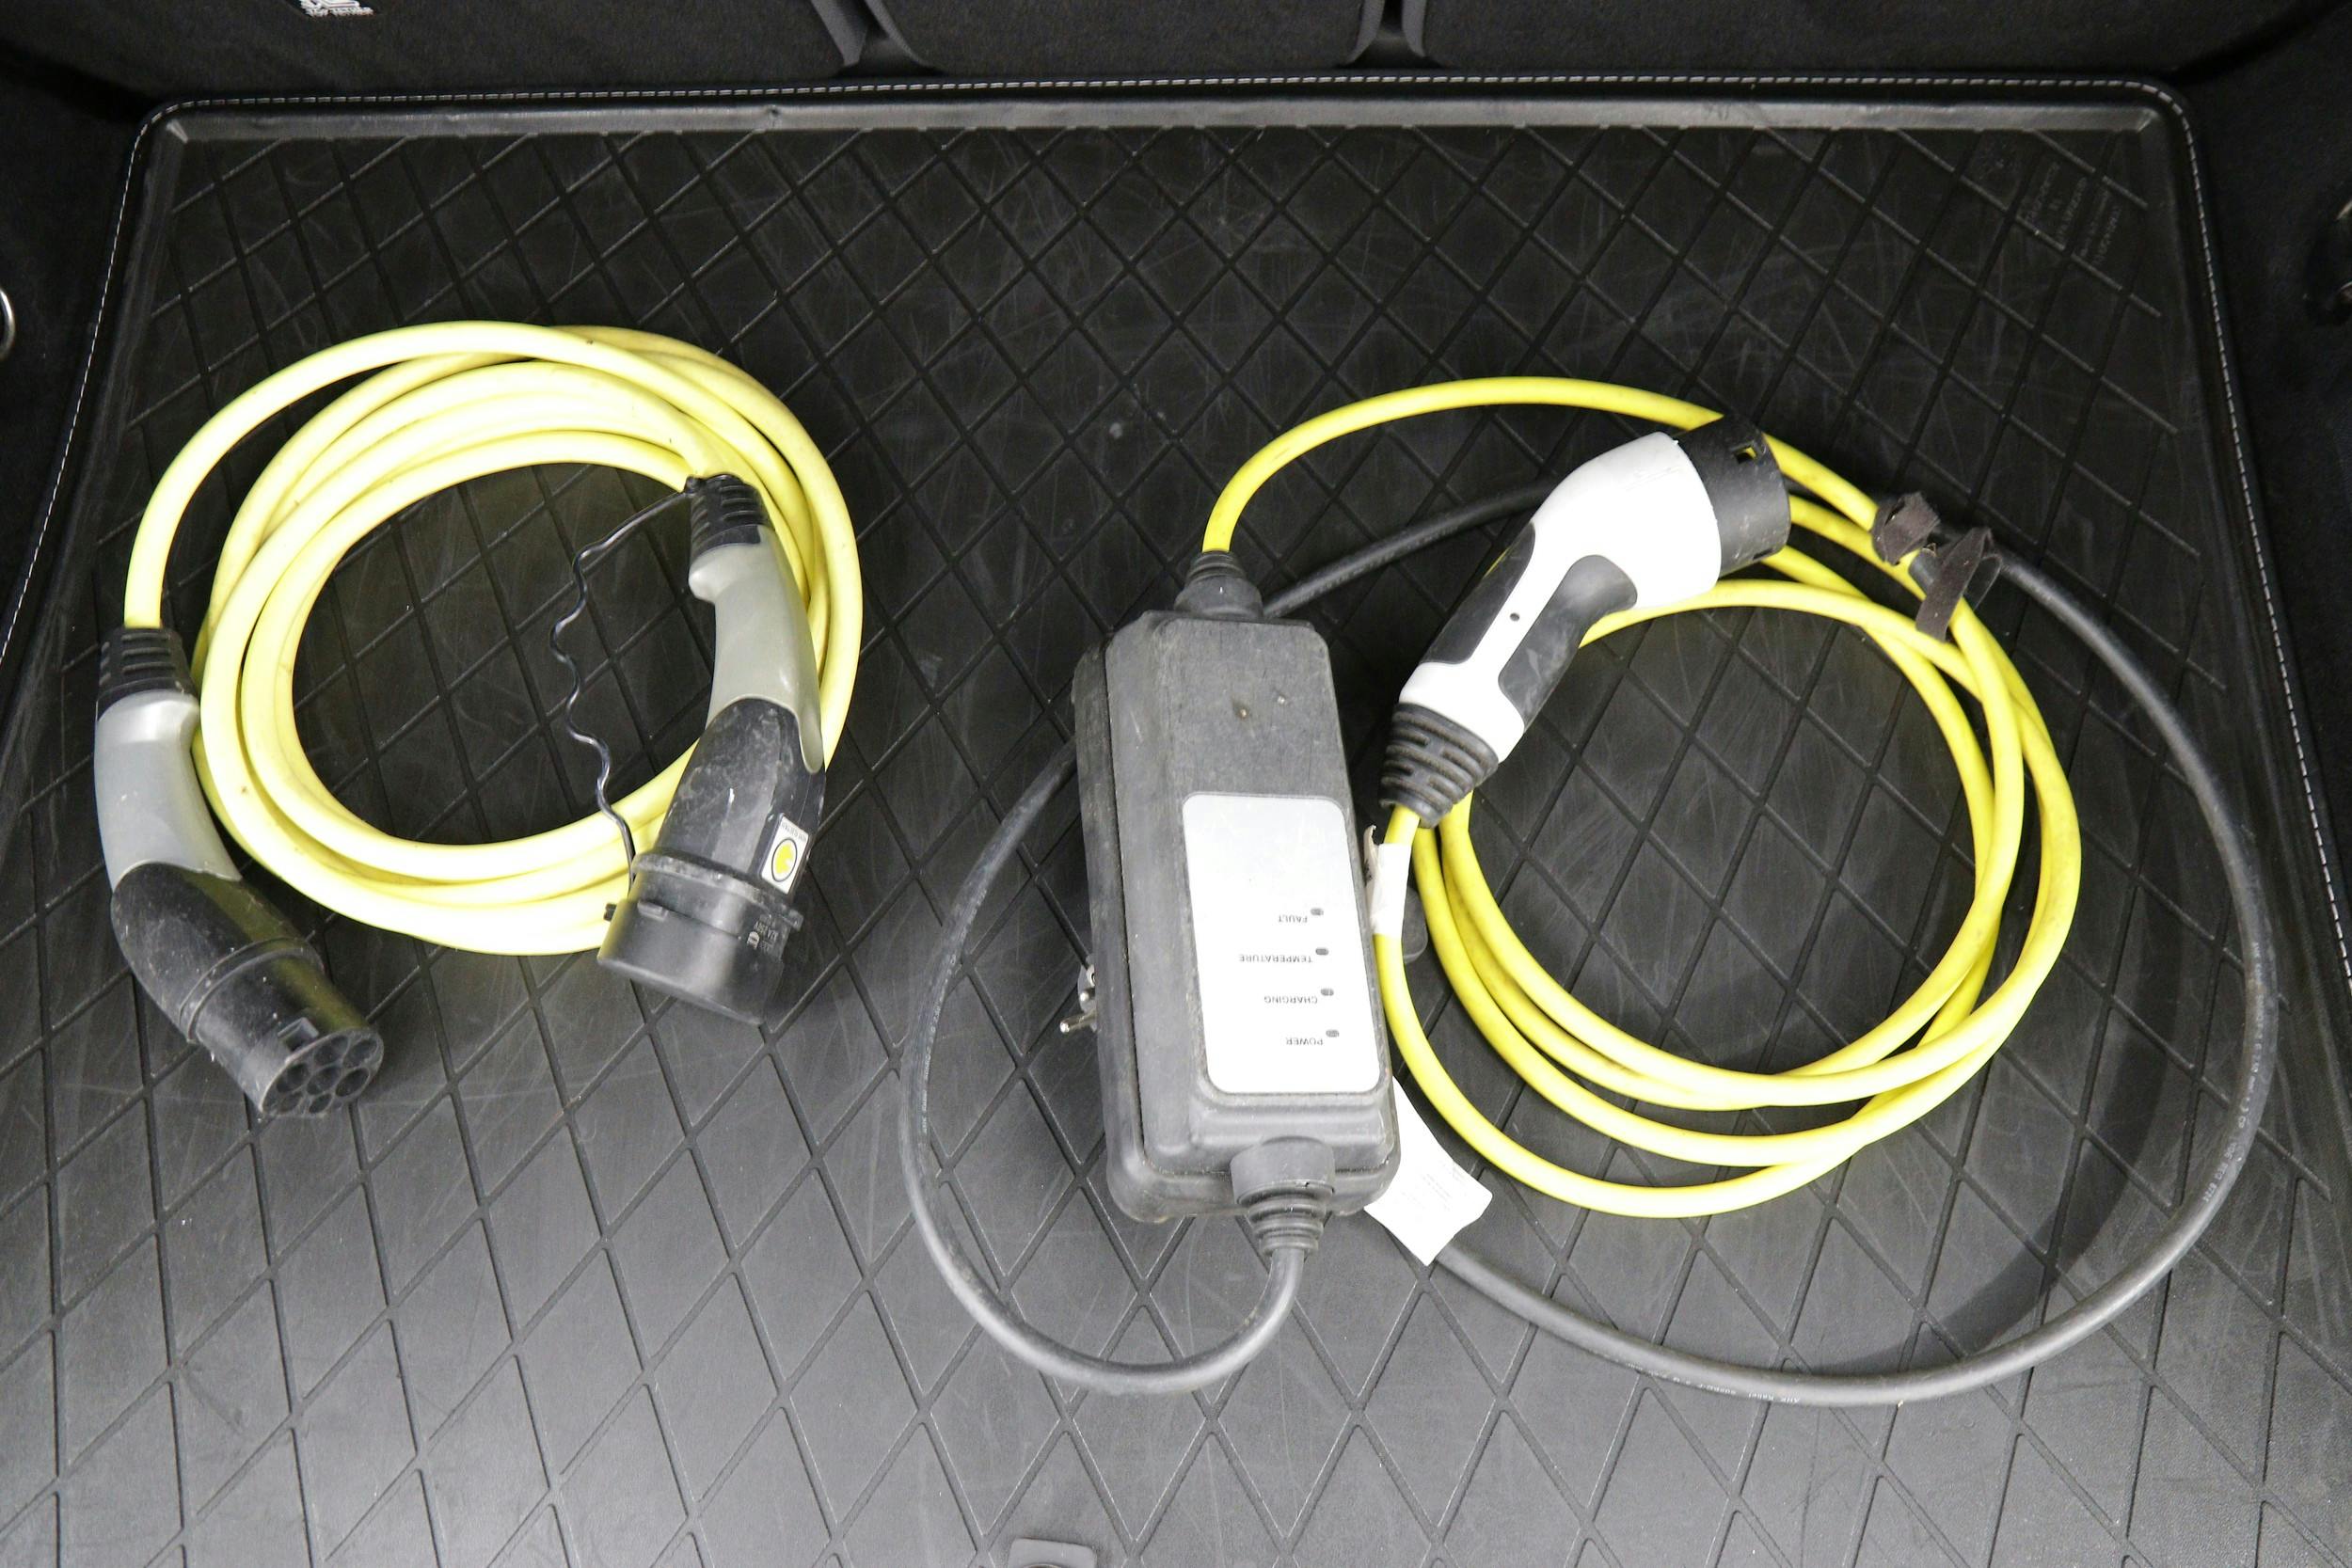 Två laddkablar med Typ 2-kontakt: för laddning i eluttag samt för laddning i laddstolpe/laddbox